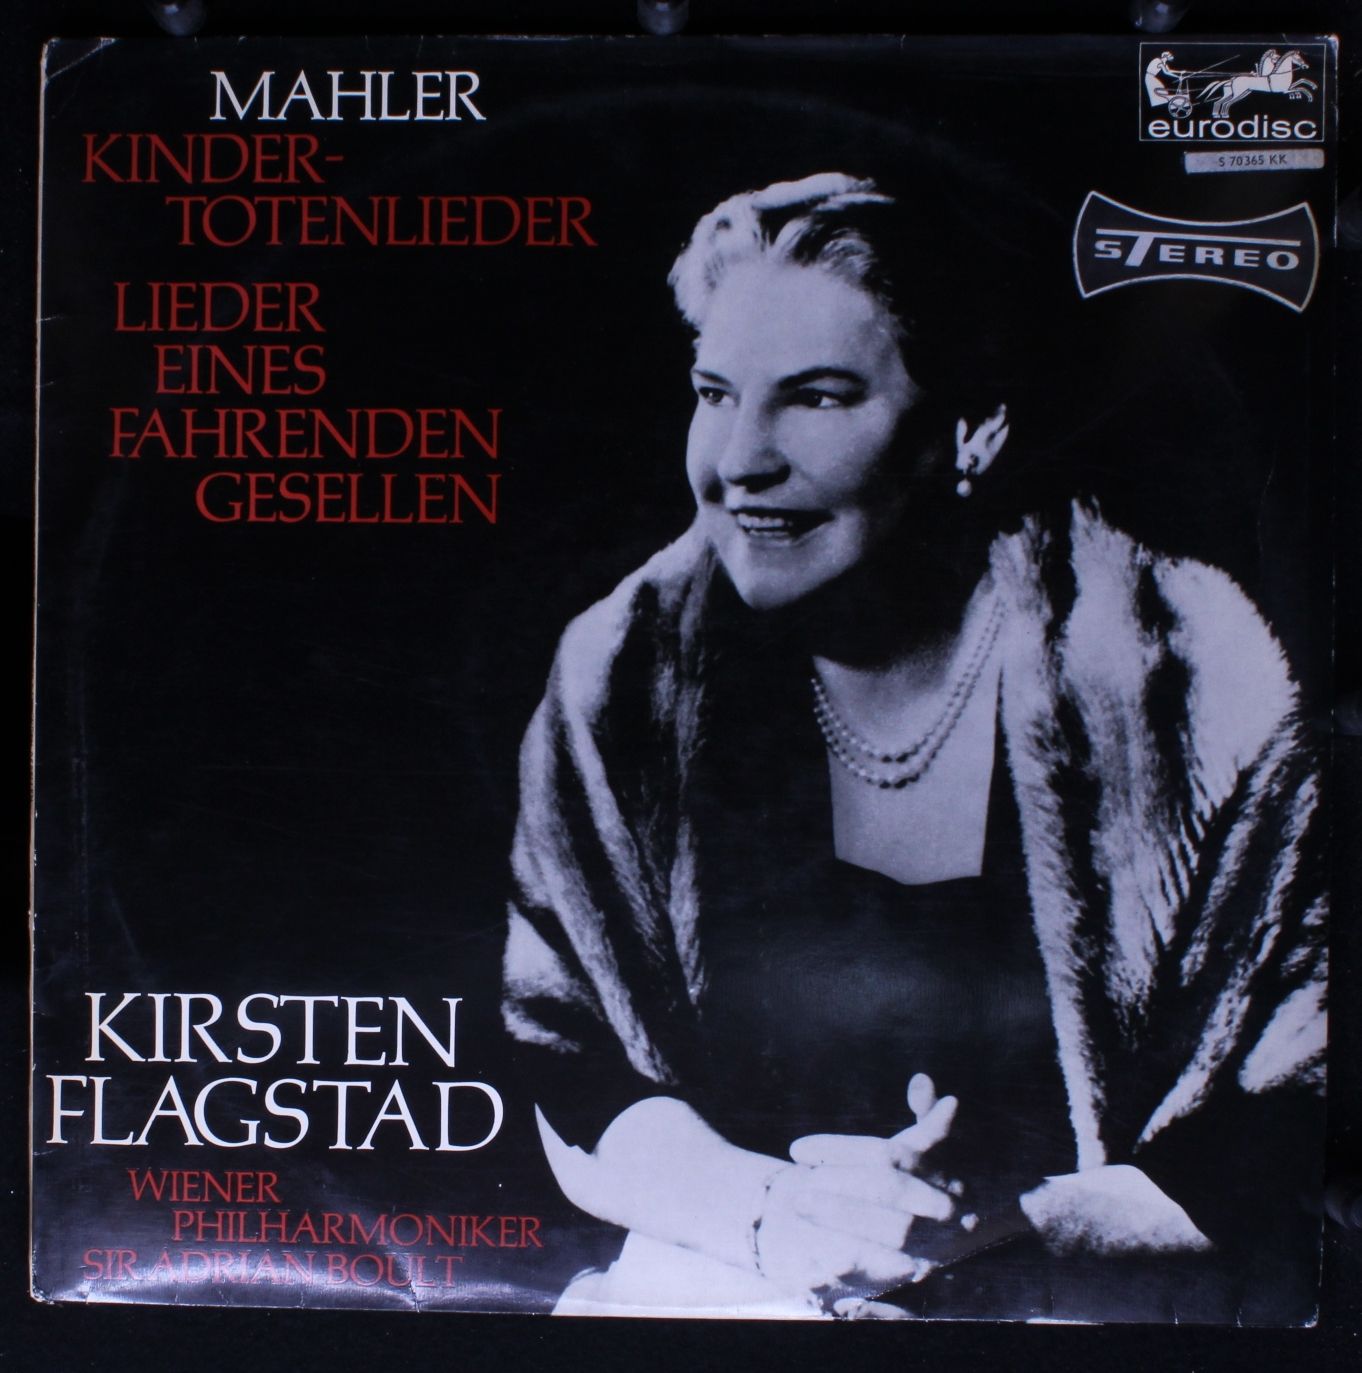 kindertotenlieder - lieder eines fahrenden gesellen - Mahler | Adrian Boult | Kirsten Flagstad | Wiener Philharmoniker